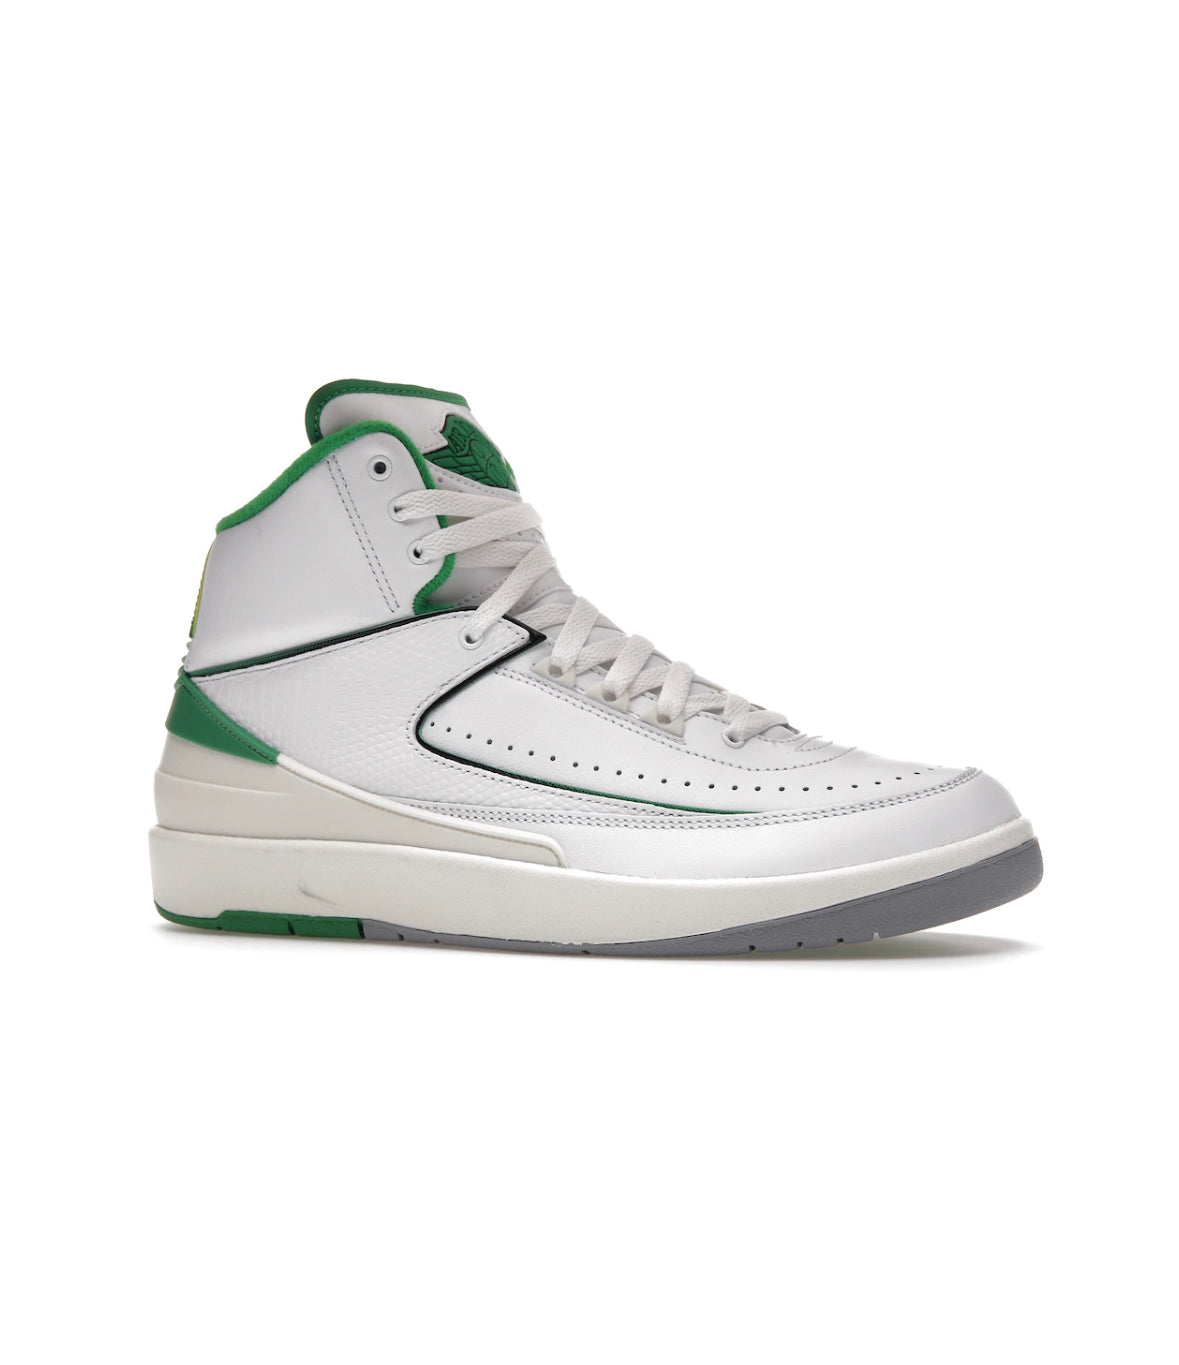 Nike Air Jordan 2 Retro Lucky Green (Mens)